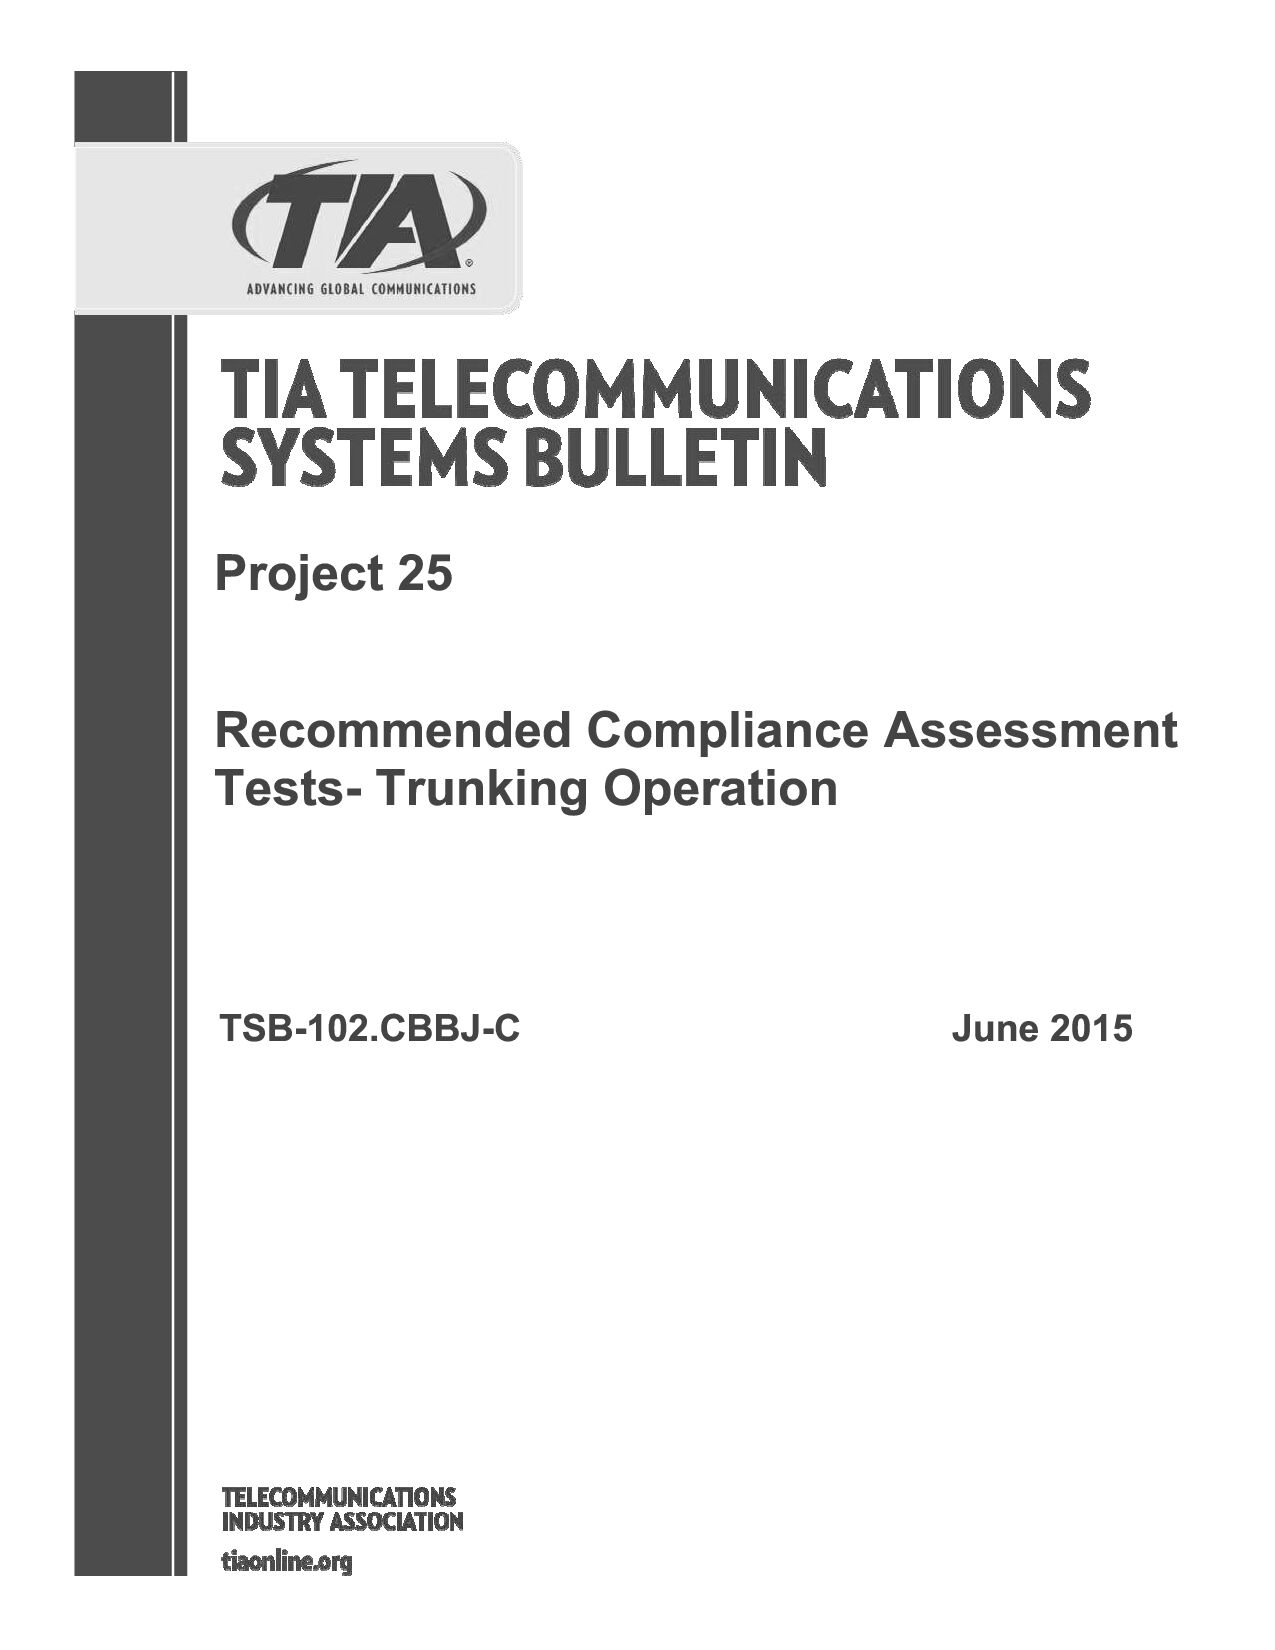 TIA TSB-102.CBBJ-C-2015